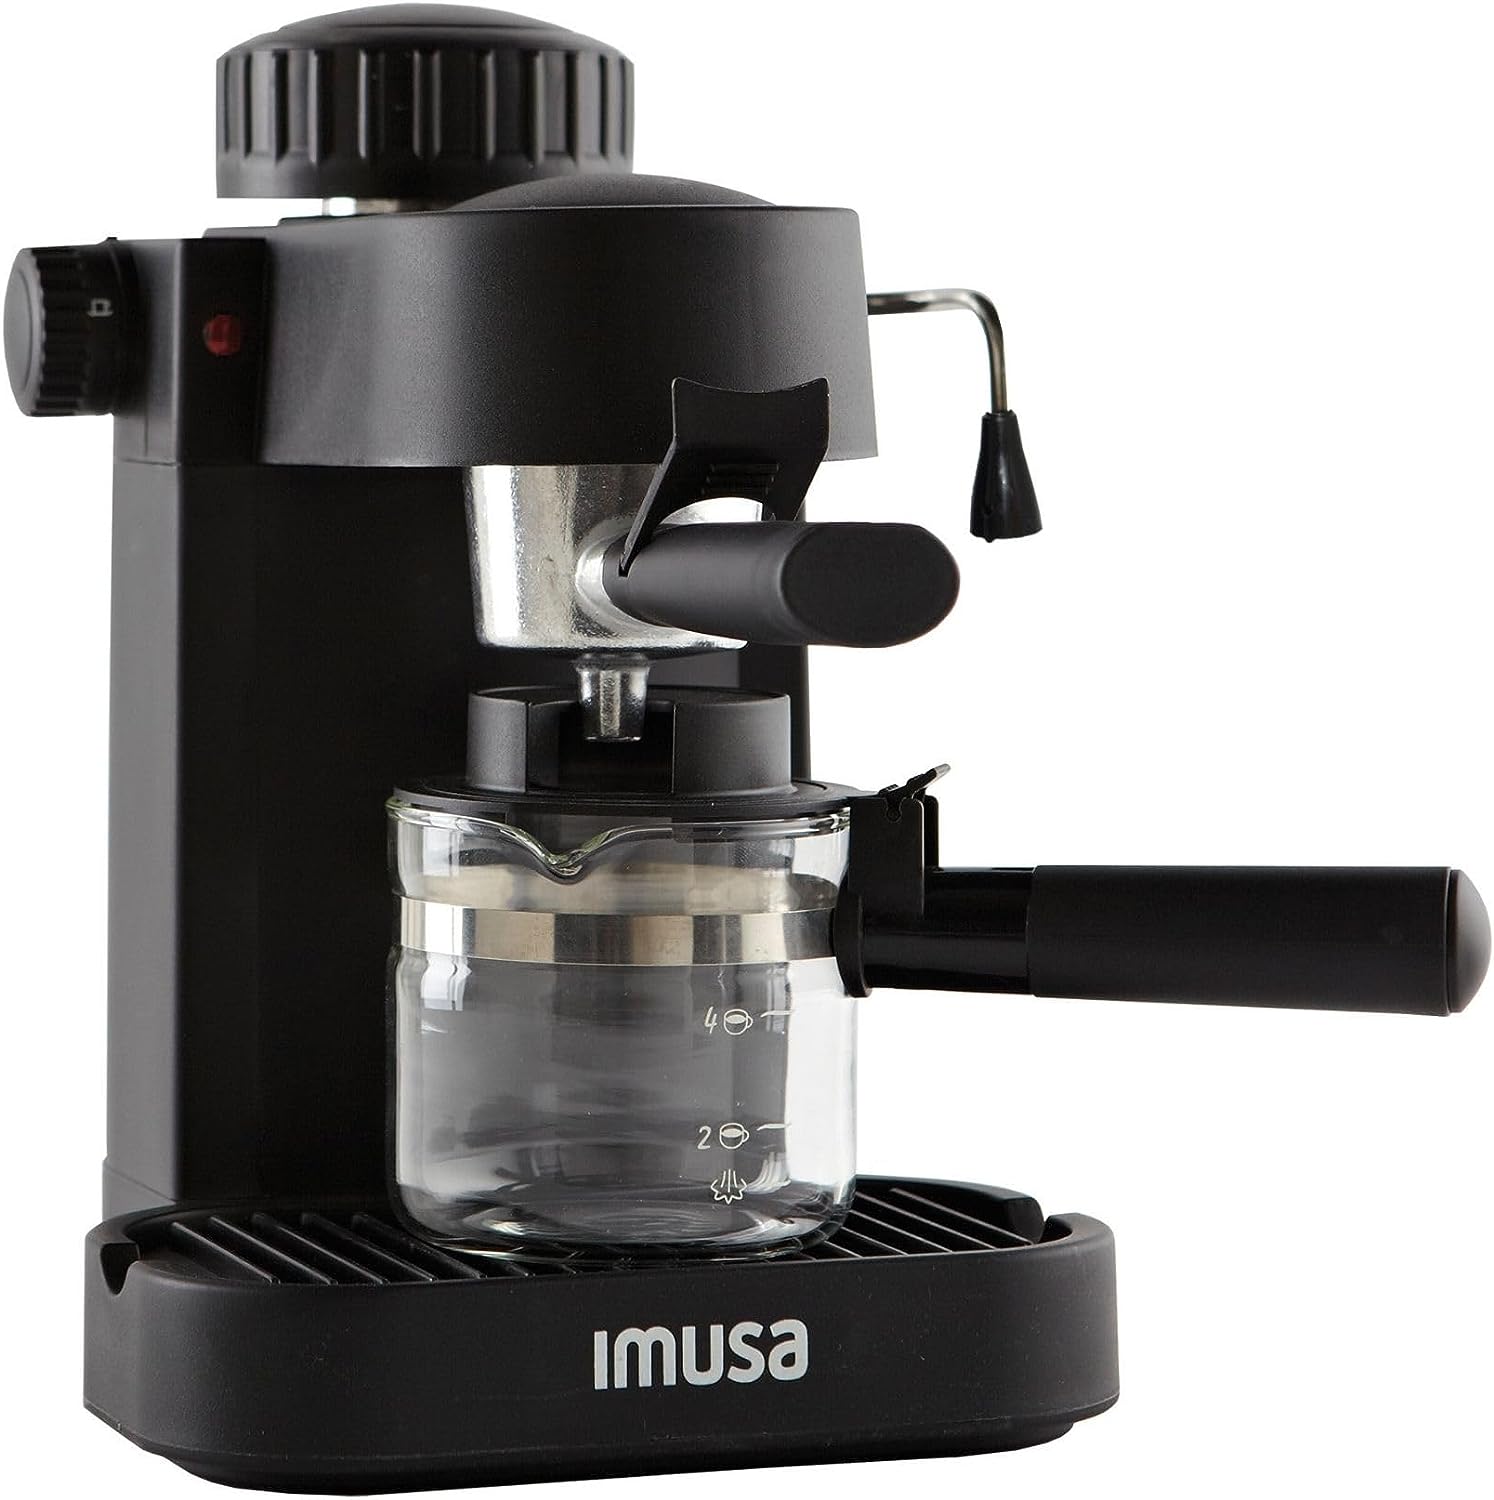 IMUSA USA GAU-18202 Espresso Maker Review